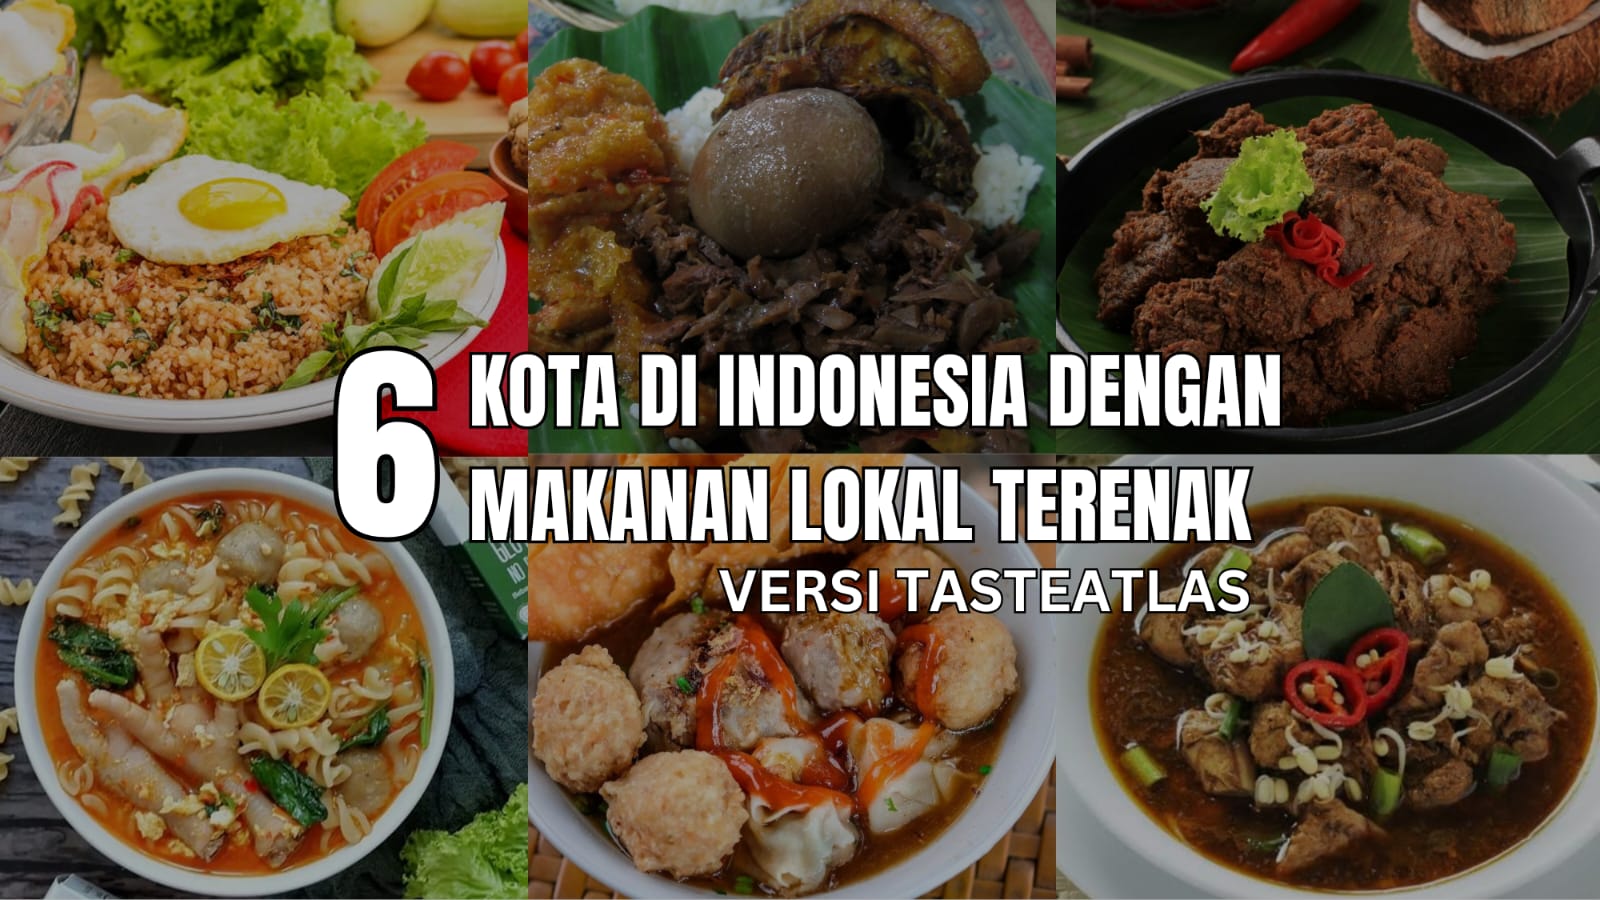 6 Kota di Indonesia dengan Kuliner Terenak di Dunia Versi TasteAtlas, Kota Kamu Termasuk?